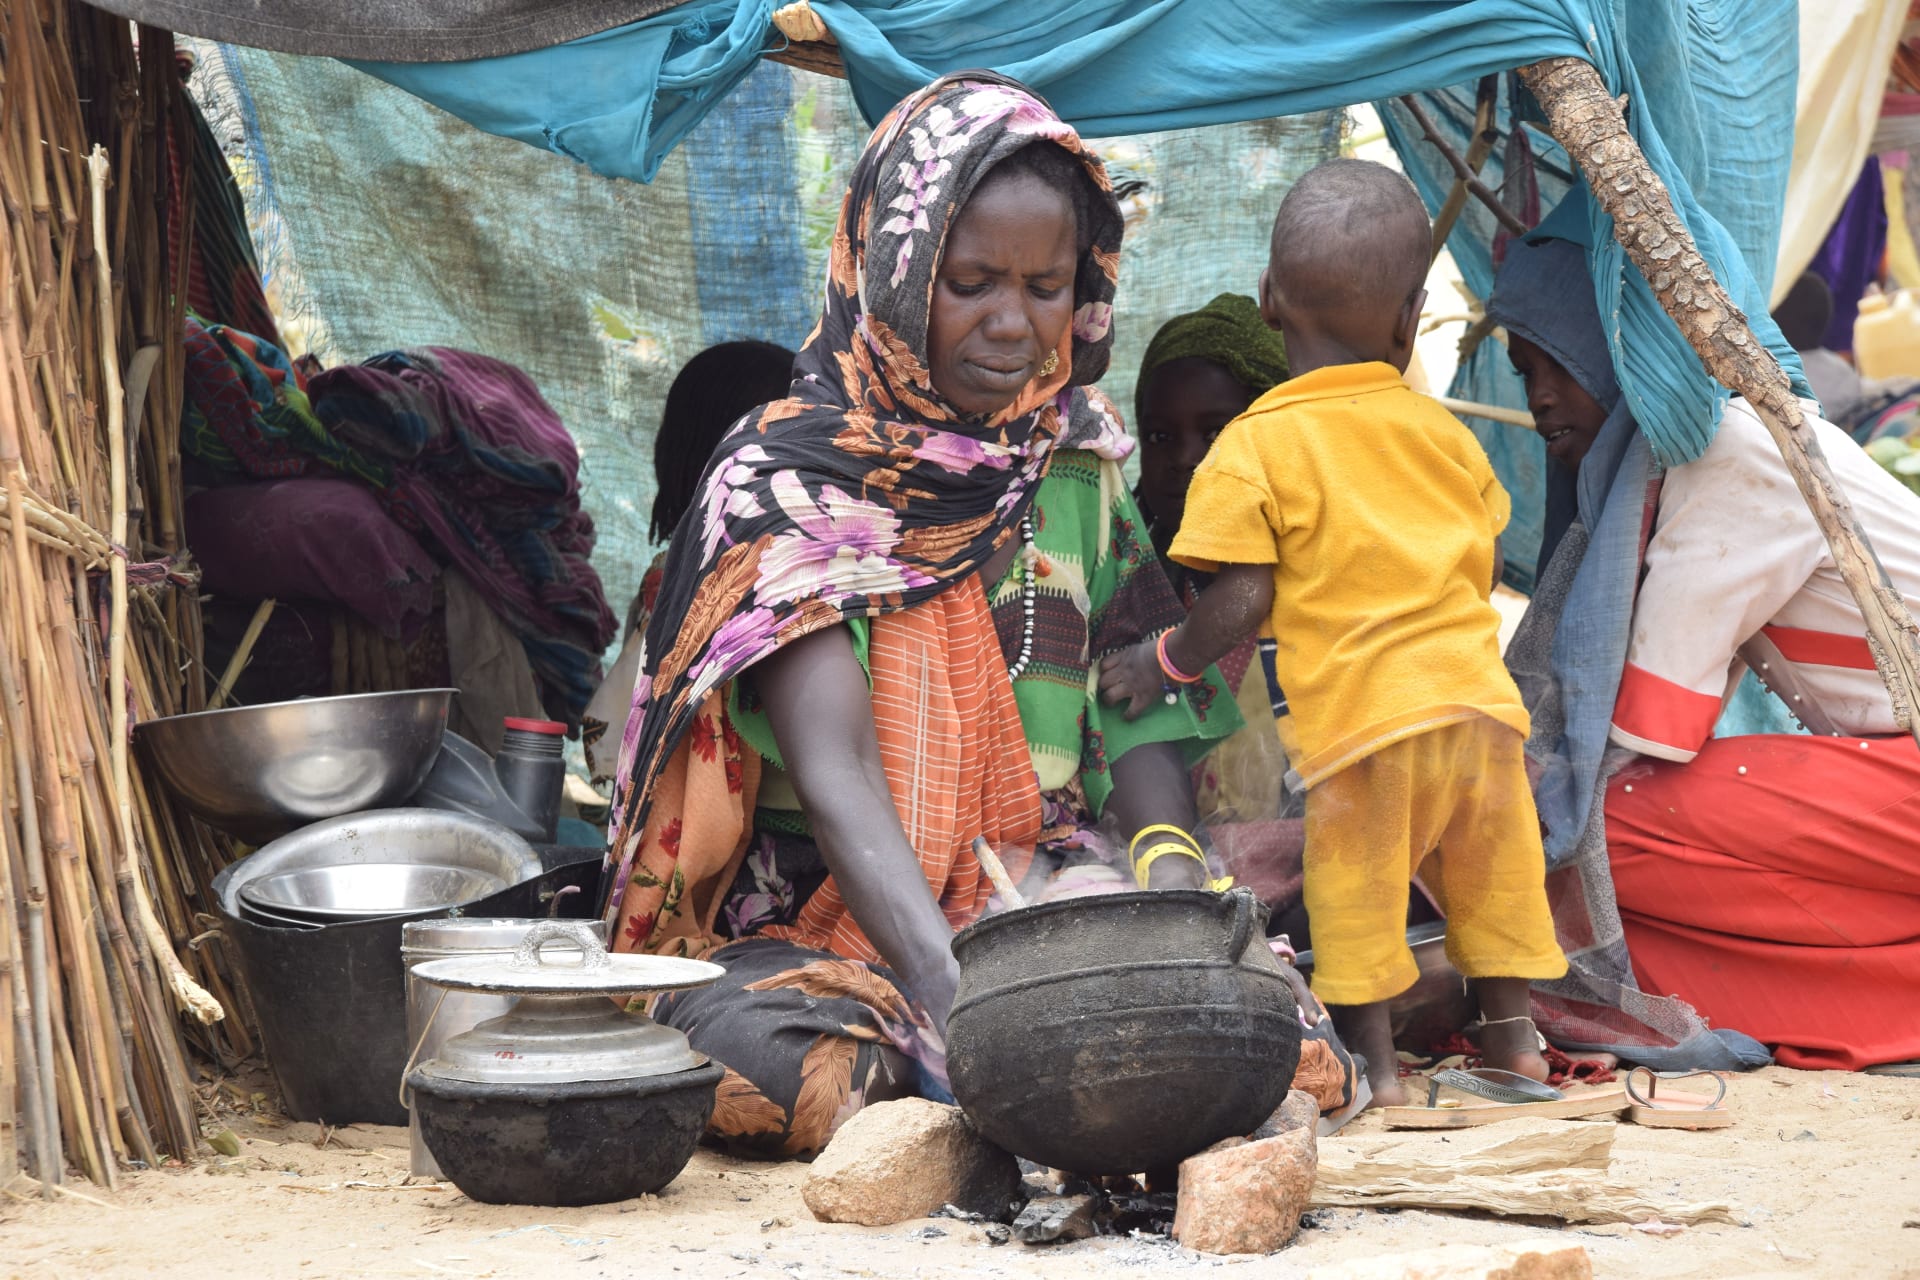 اليونيسيف: الأطفال في السودان يعيشون وسط أعمال عنف مرعبة.. والوضع يتجه نحو كارثة